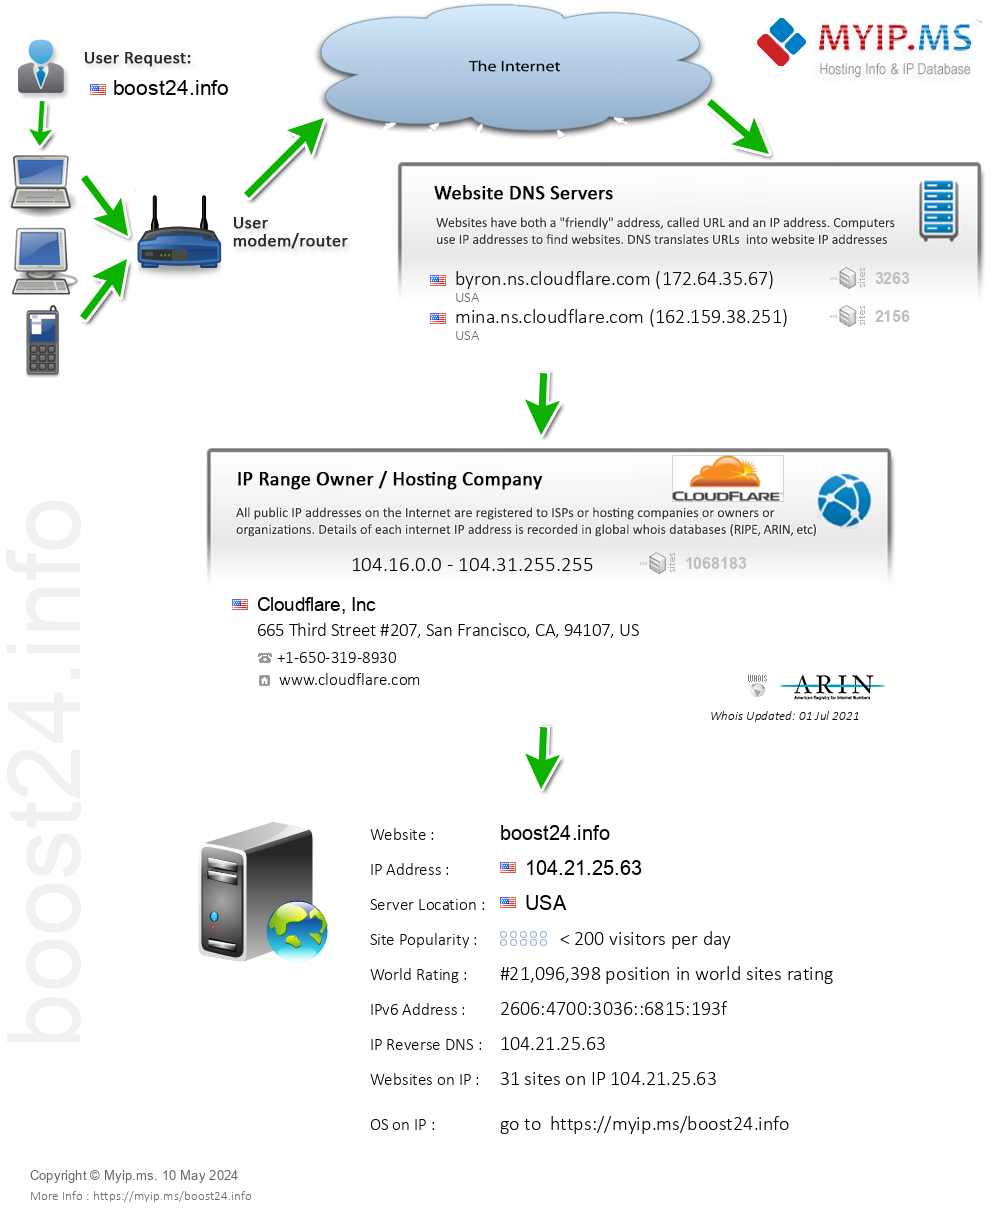 Boost24.info - Website Hosting Visual IP Diagram